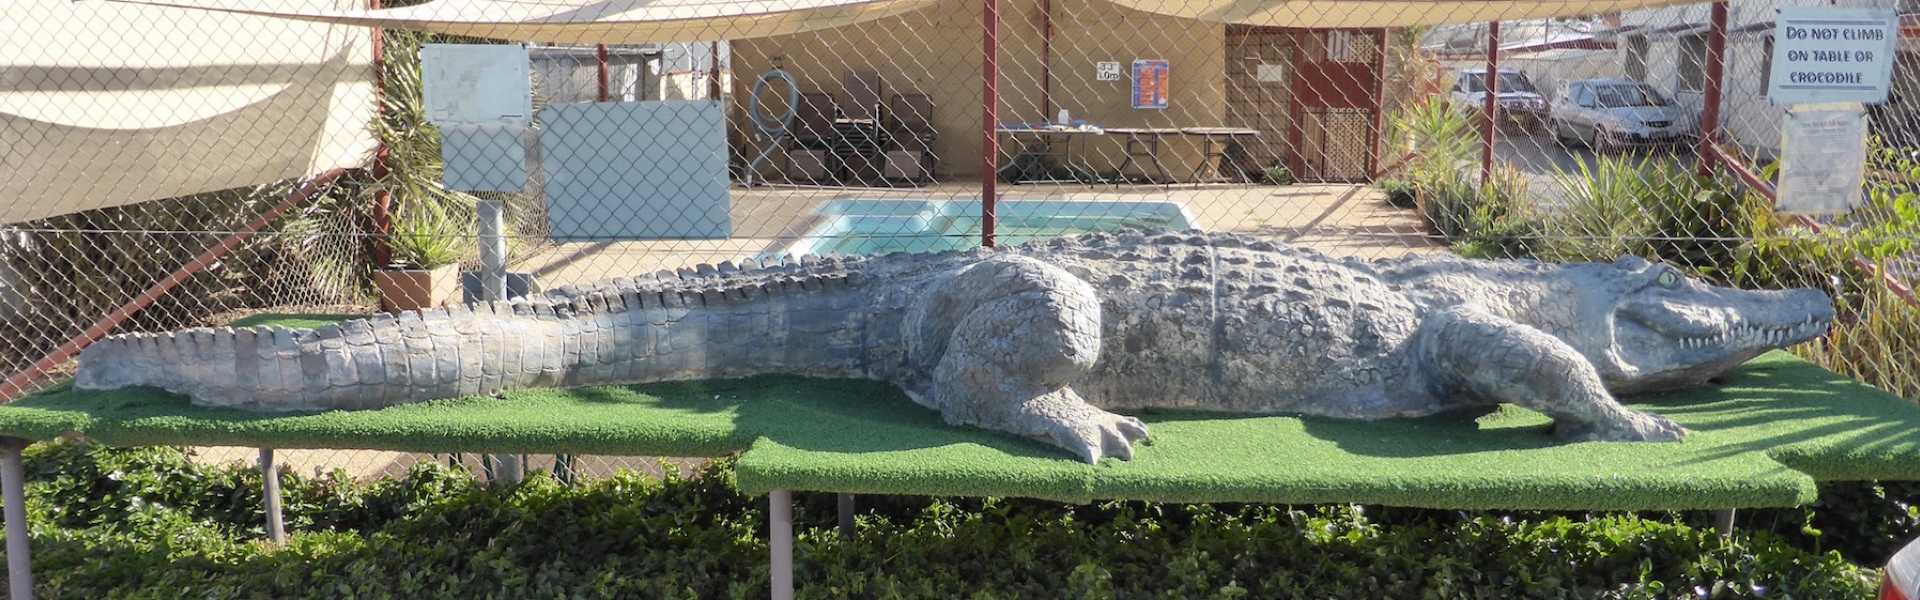 Kui Parks, Crocodile Caravan Park, Lightning Ridge, The Crocodile